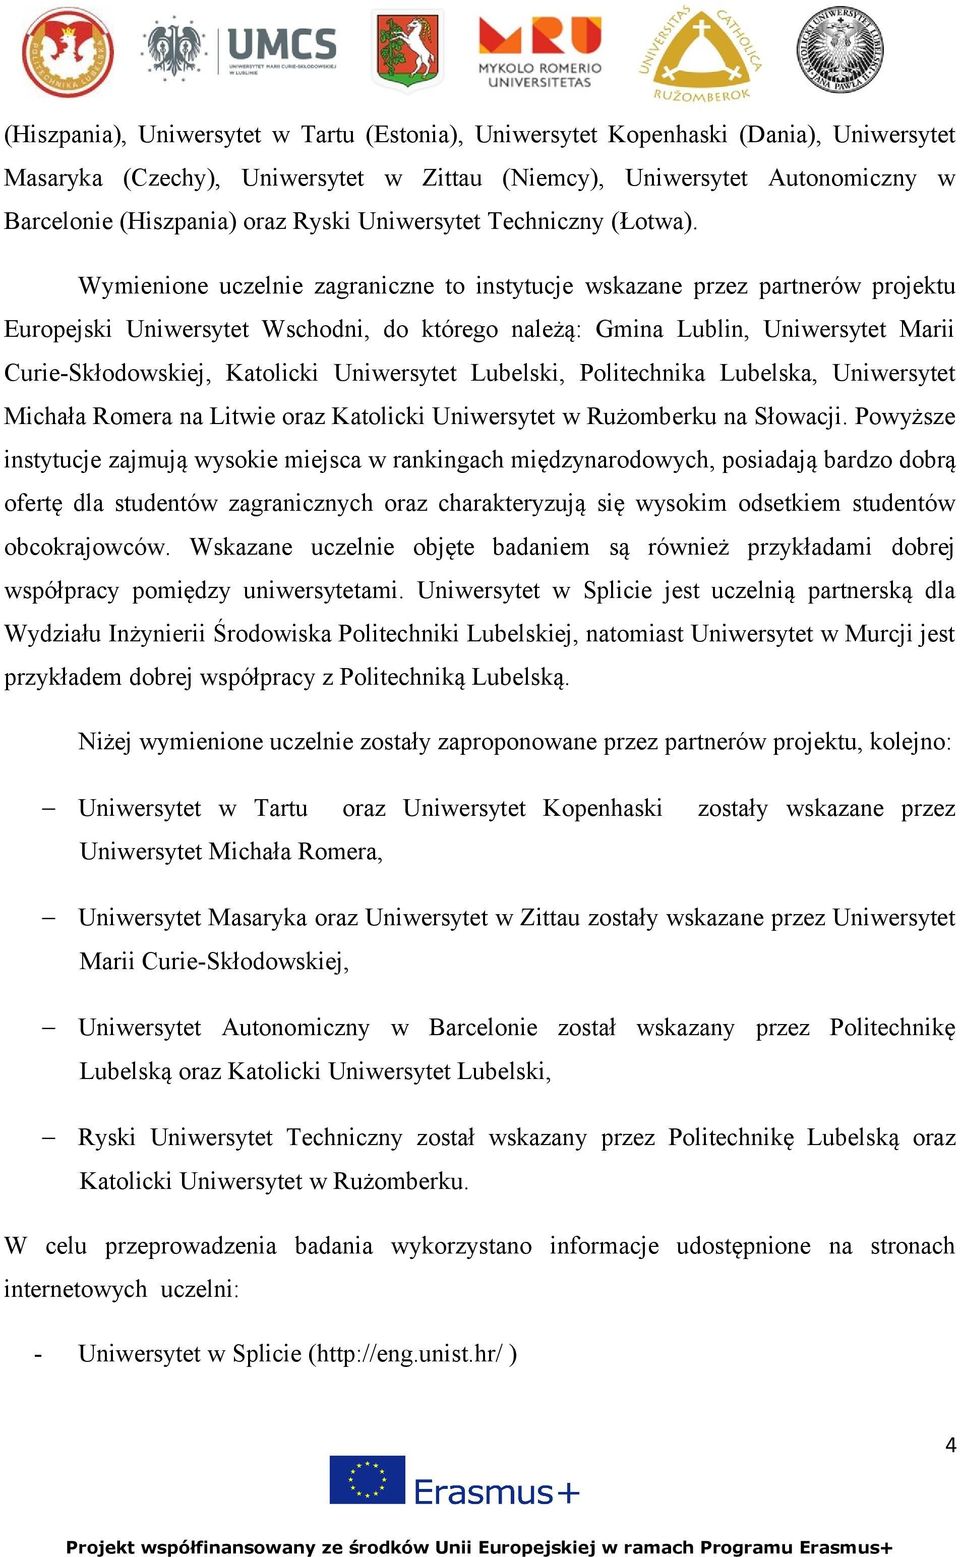 Wymienione uczelnie zagraniczne to instytucje wskazane przez partnerów projektu Europejski Uniwersytet Wschodni, do którego należą: Gmina Lublin, Uniwersytet Marii Curie-Skłodowskiej, Katolicki